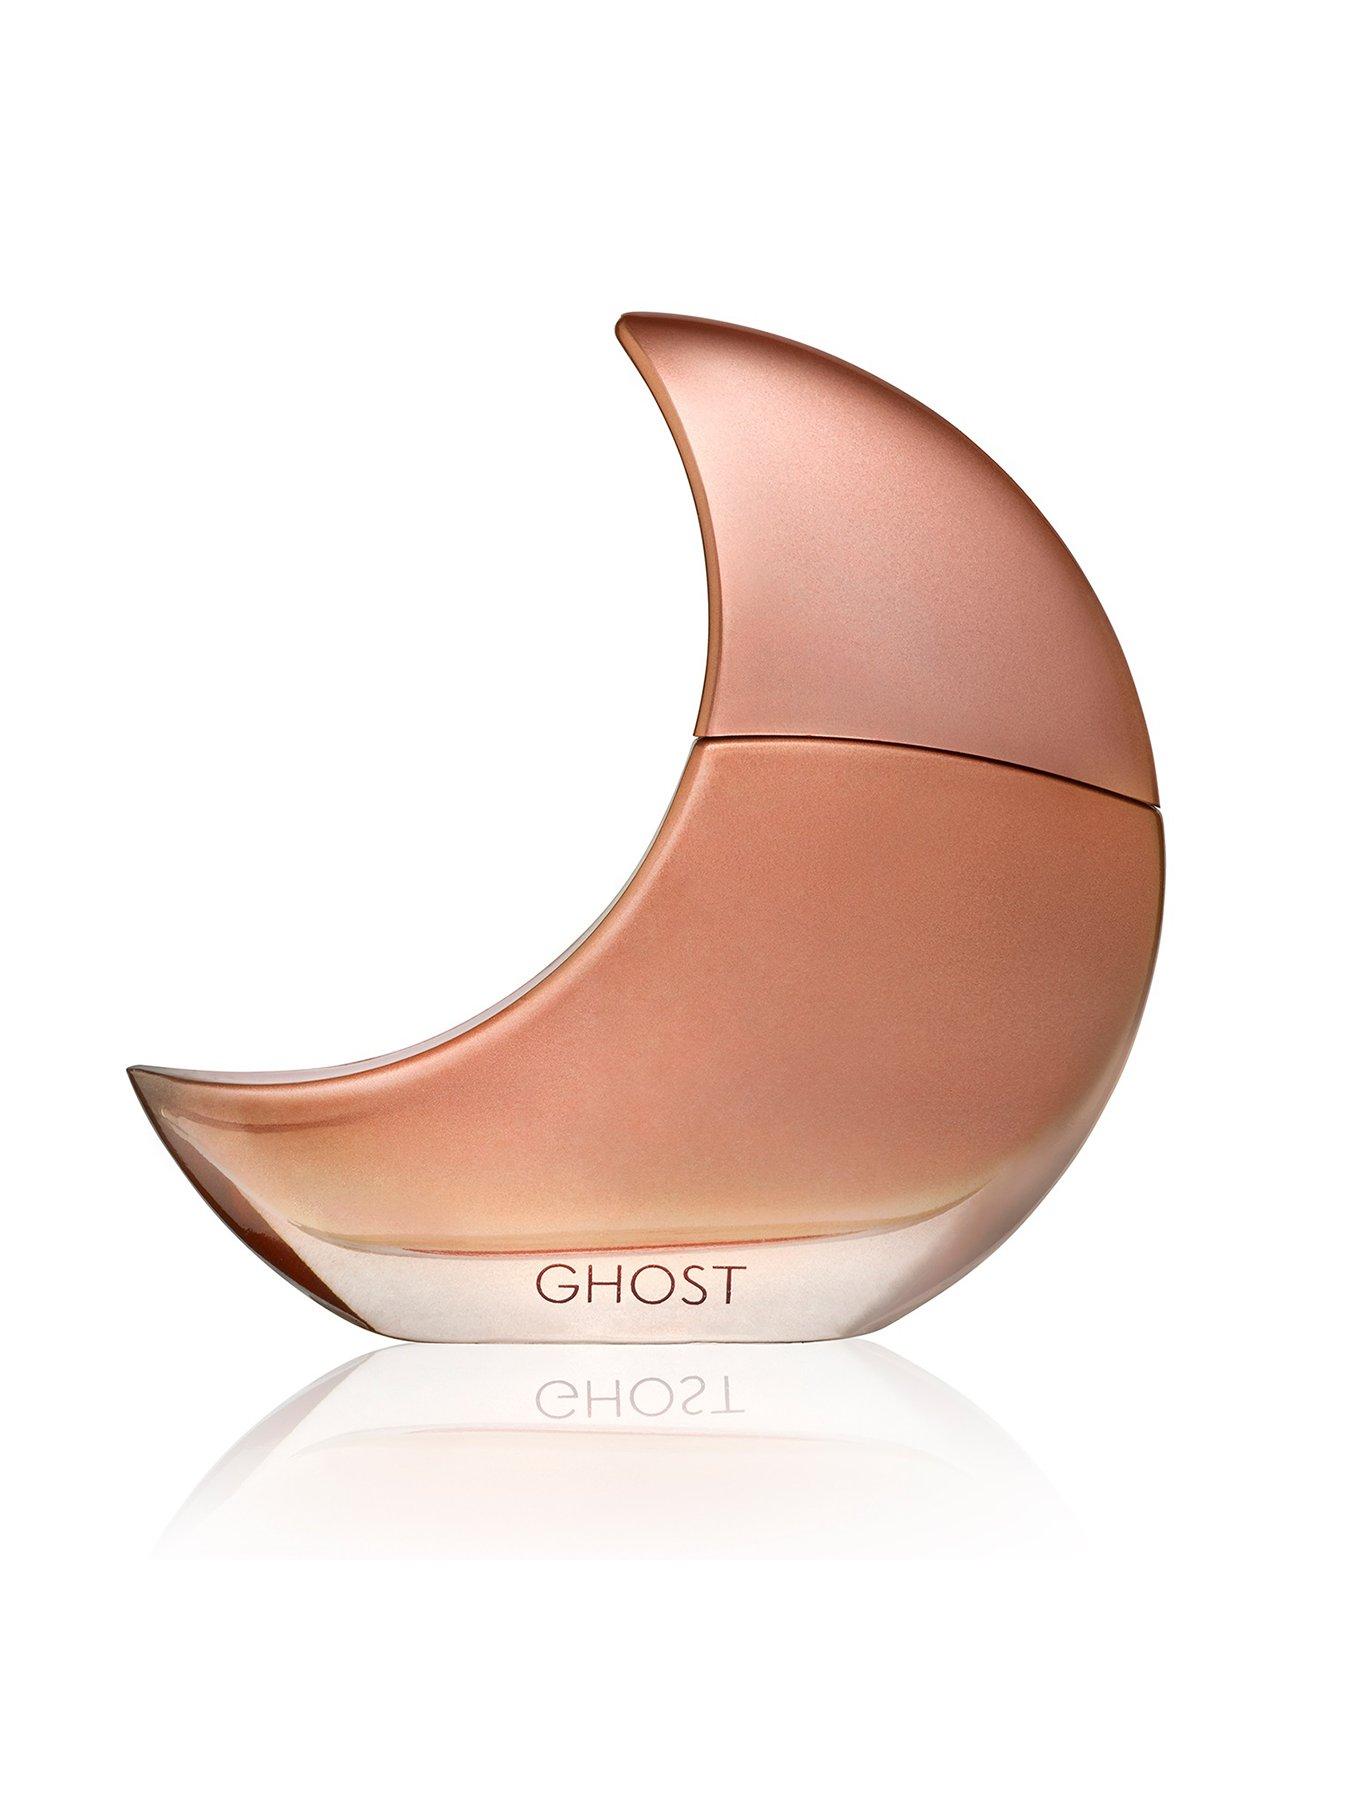 Ghost Orb Of Night Eau de Parfum, Multi, Size 50Ml, Women